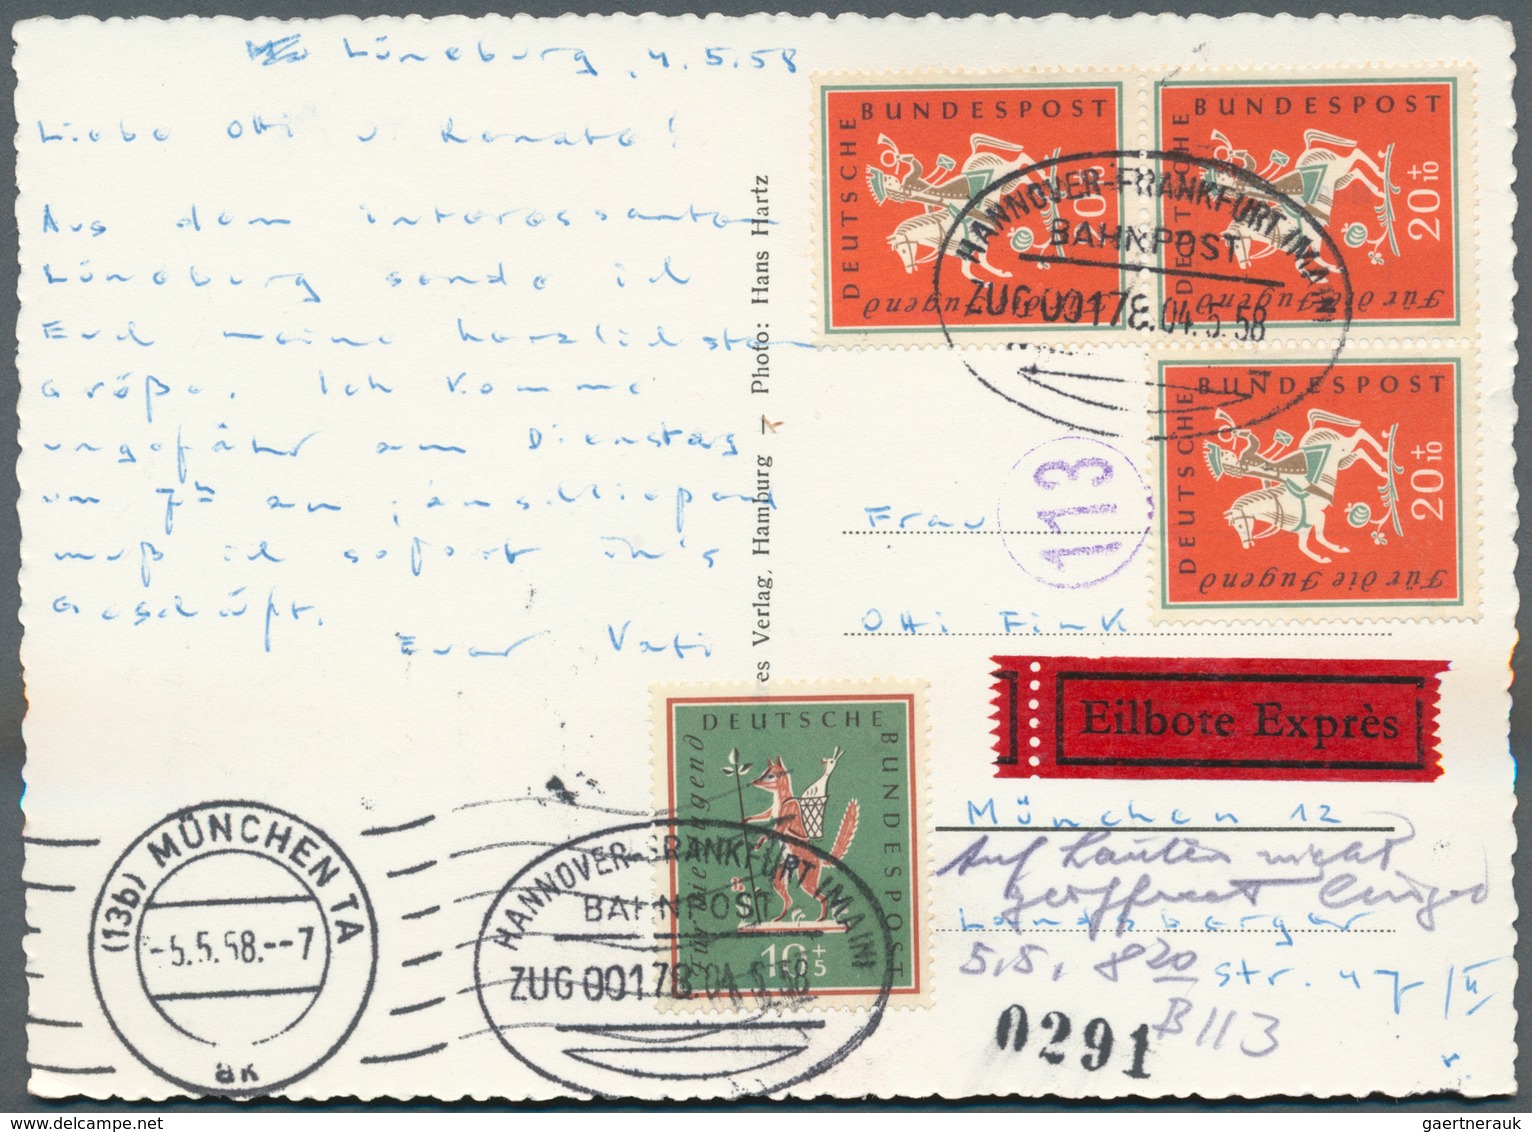 32726 Bundesrepublik Deutschland: 1950/1970 (ca.), vielseitiger Bestand von ca. 830 Briefen/Karten mit dek